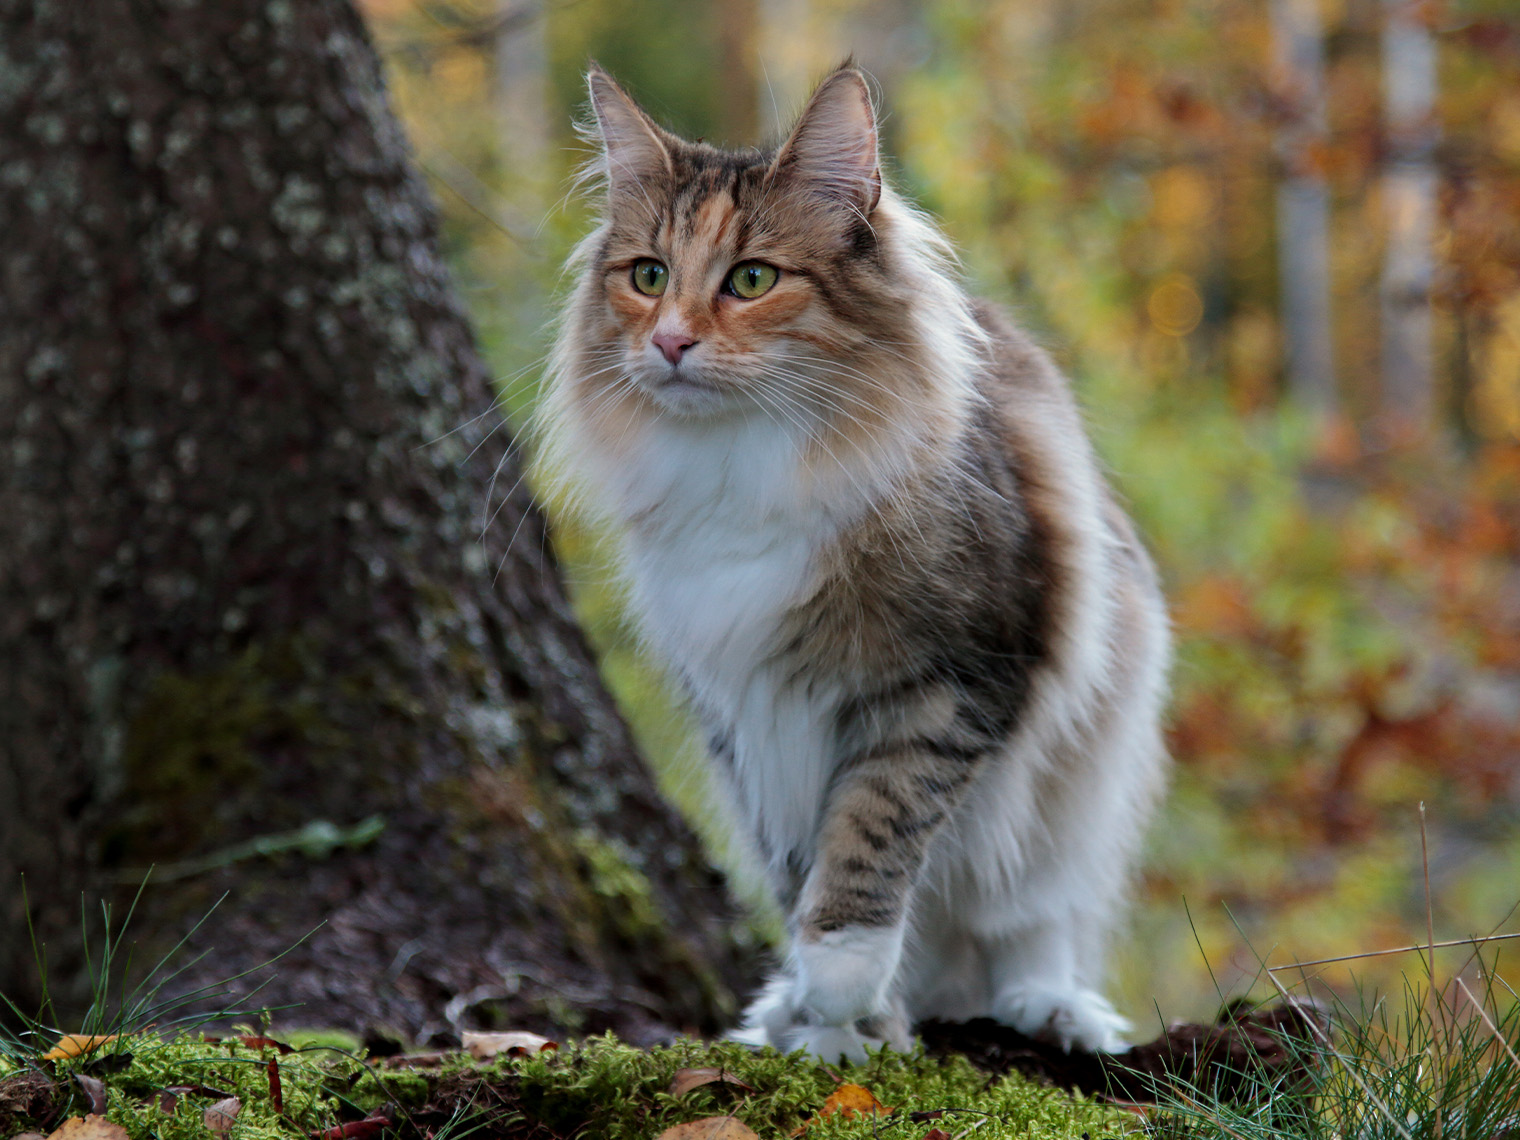 Noorse boskat op een wandeling